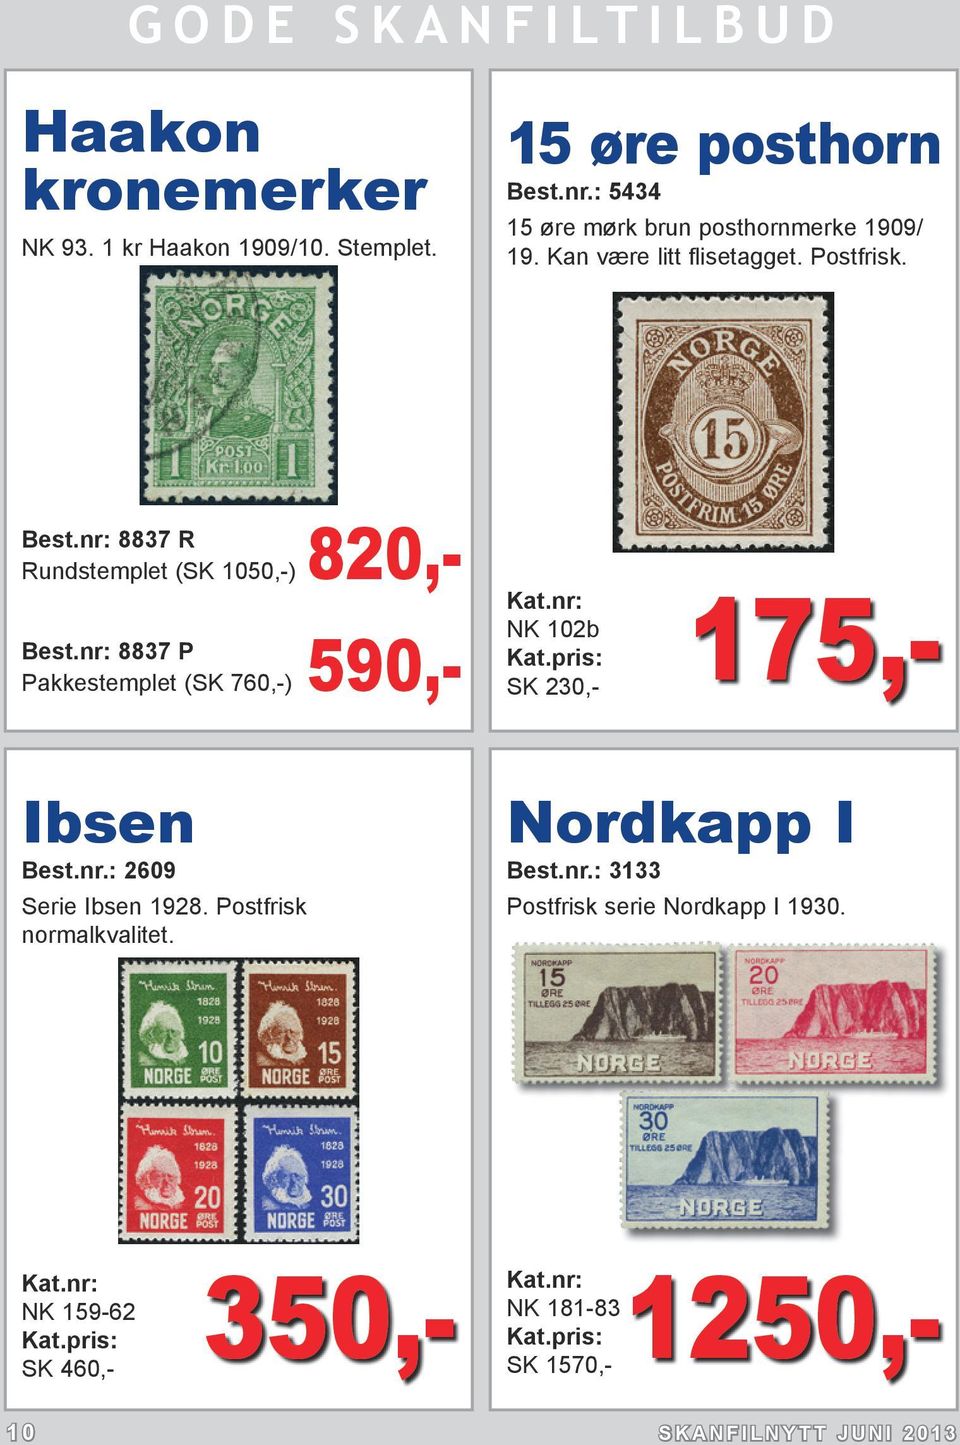 nr: 8837 R Rundstemplet (SK 1050,-) 820,- Best.nr: 8837 P Pakkestemplet (SK 760,-) 590,- 175,- NK 102b Ibsen Best.nr.: 2609 Serie Ibsen 1928.